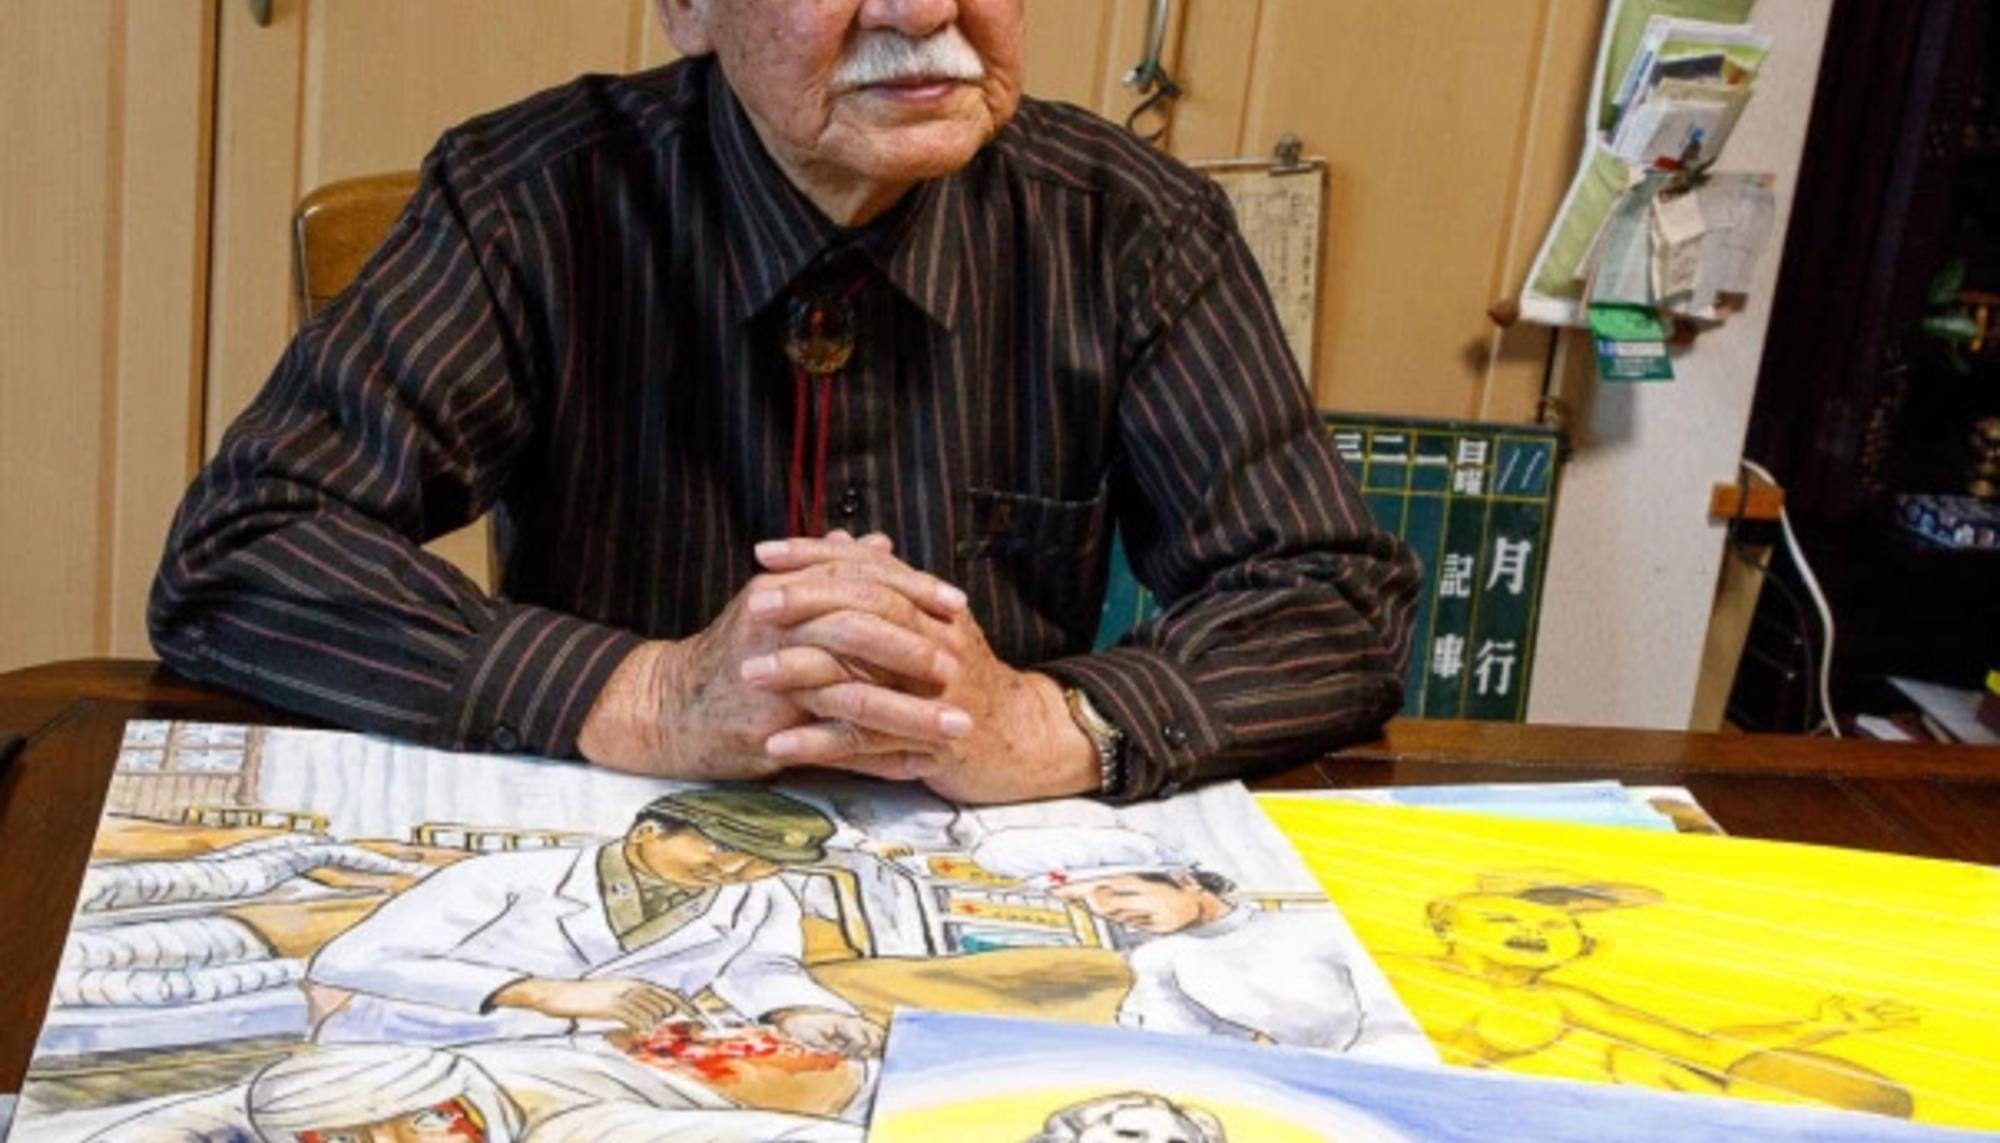 Hibakusha de Nagasaki, Yukio Inoue, con sus dibujos retratando varias experiencias de supervivientes de las bombas atómicas. Fuente: Beyond Nuclear International